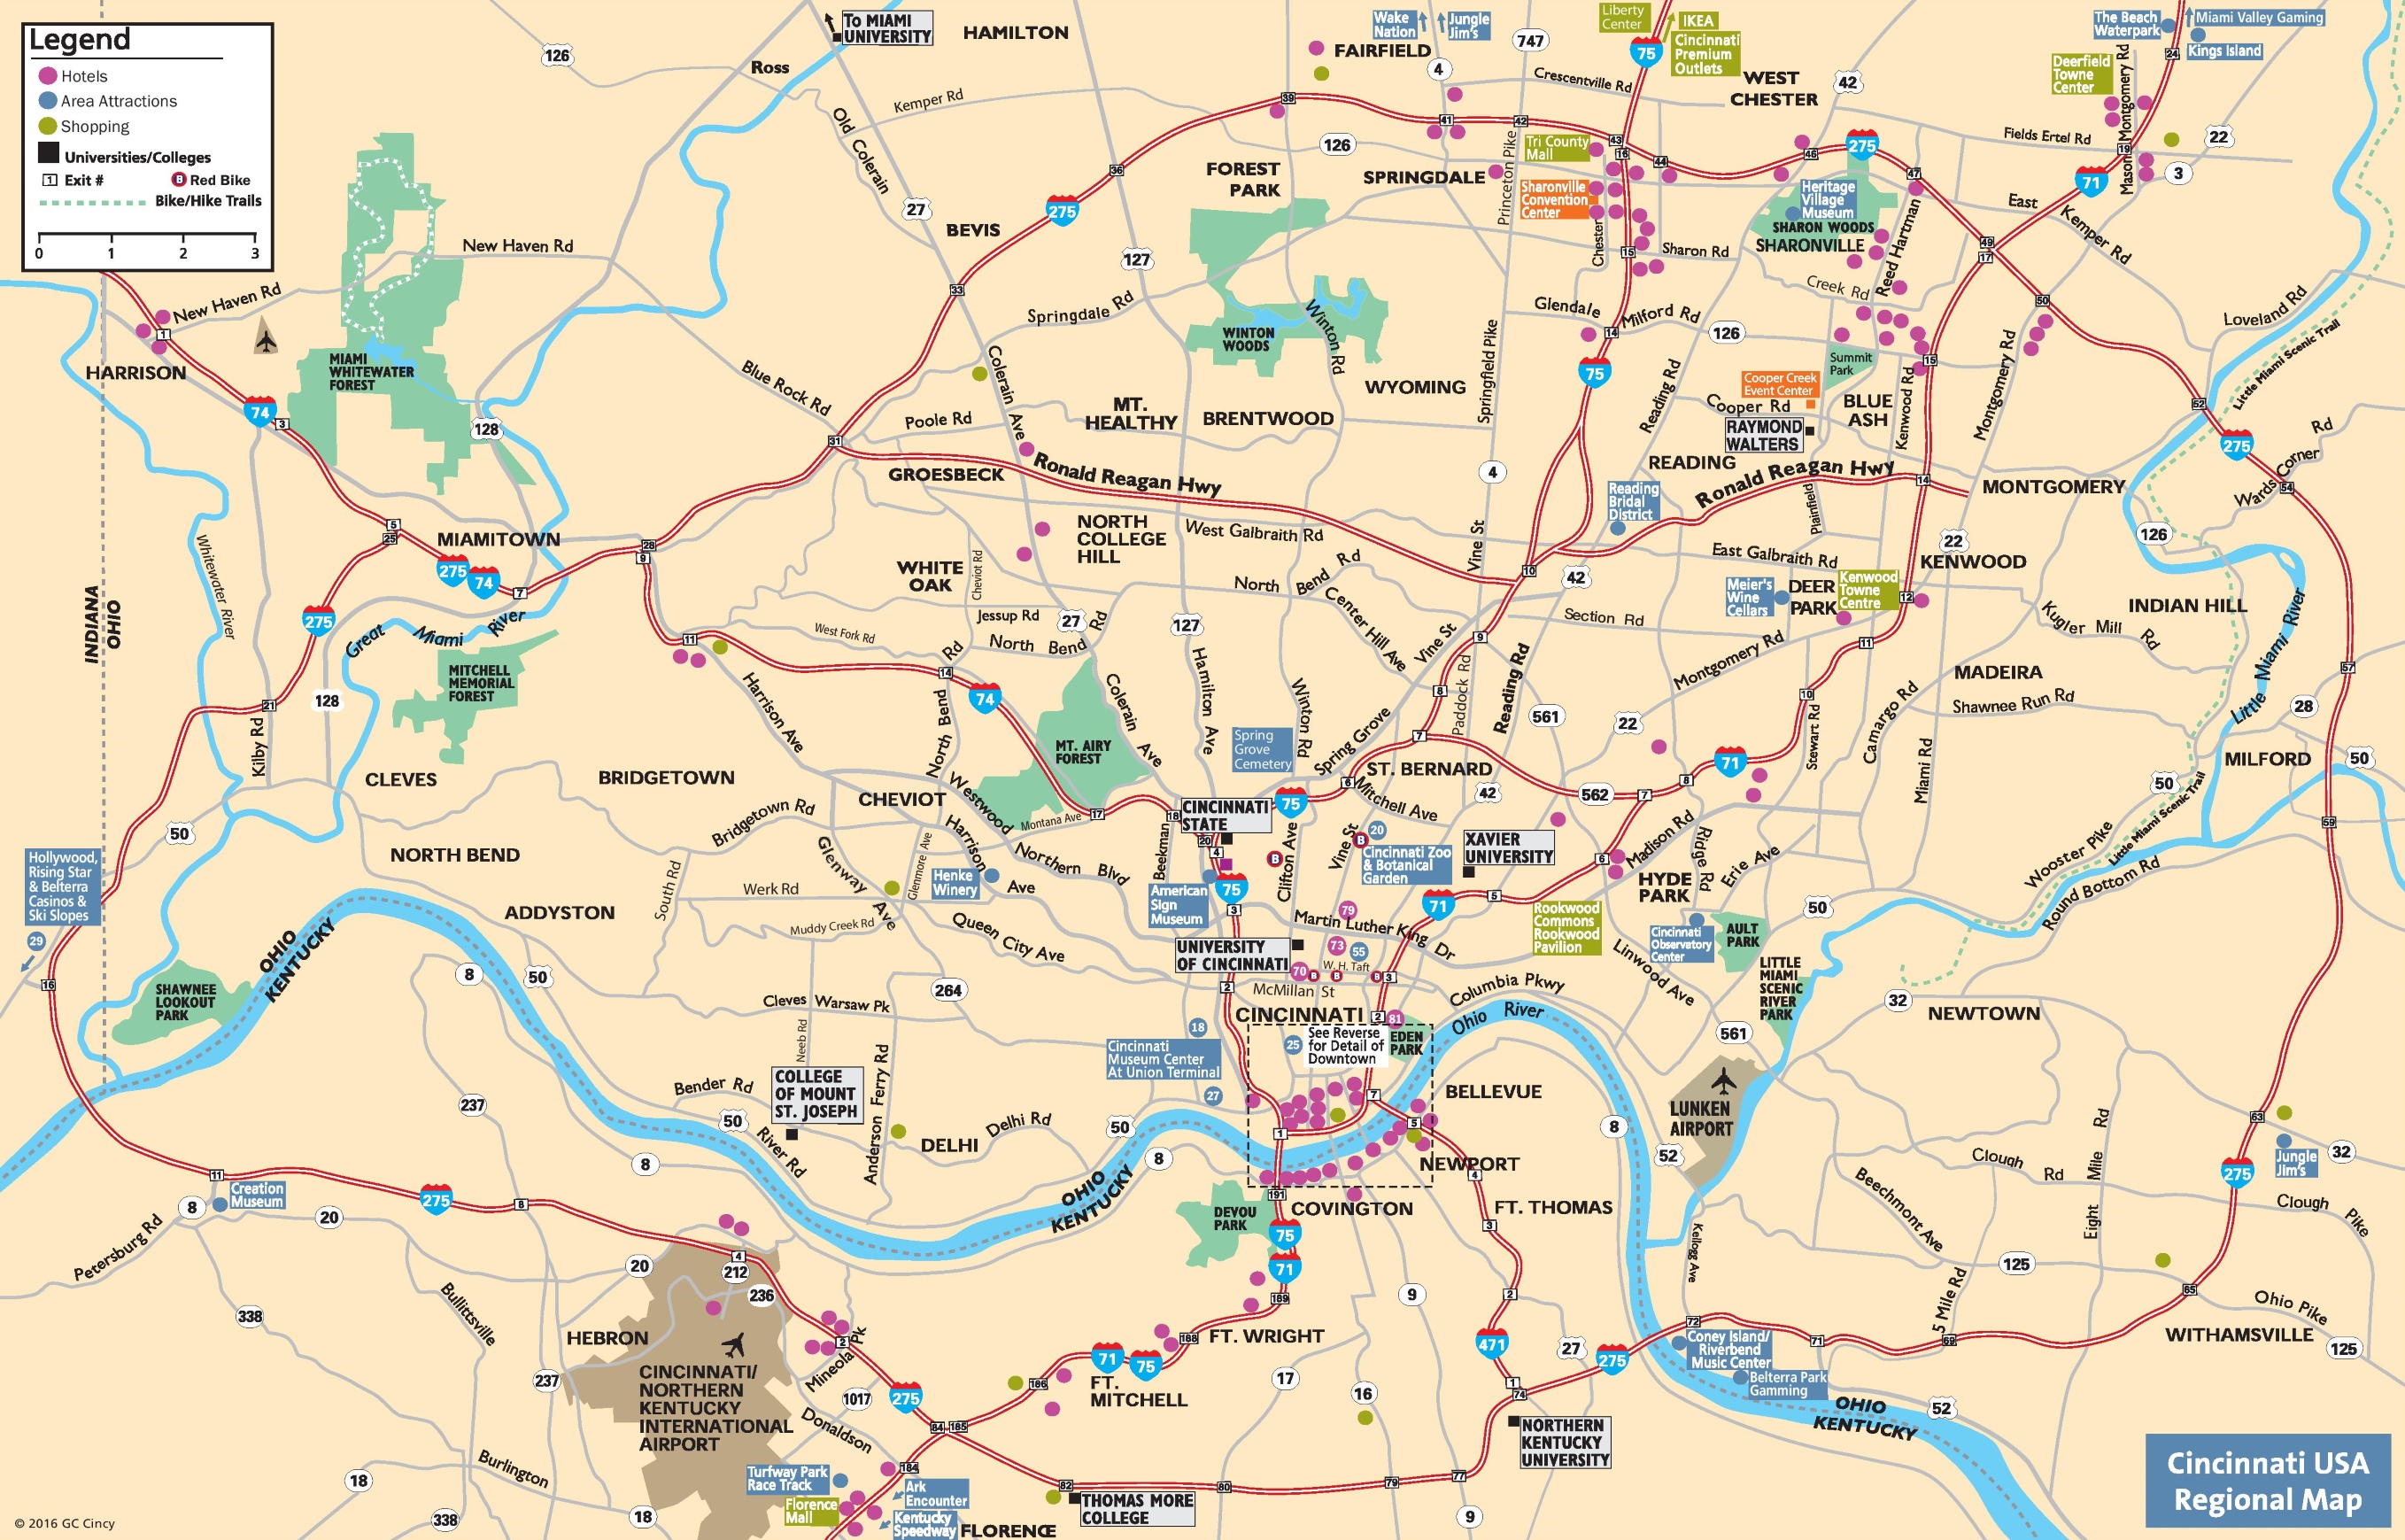 Large Map Of Cincinnati Cincinnati Area Tourist Map